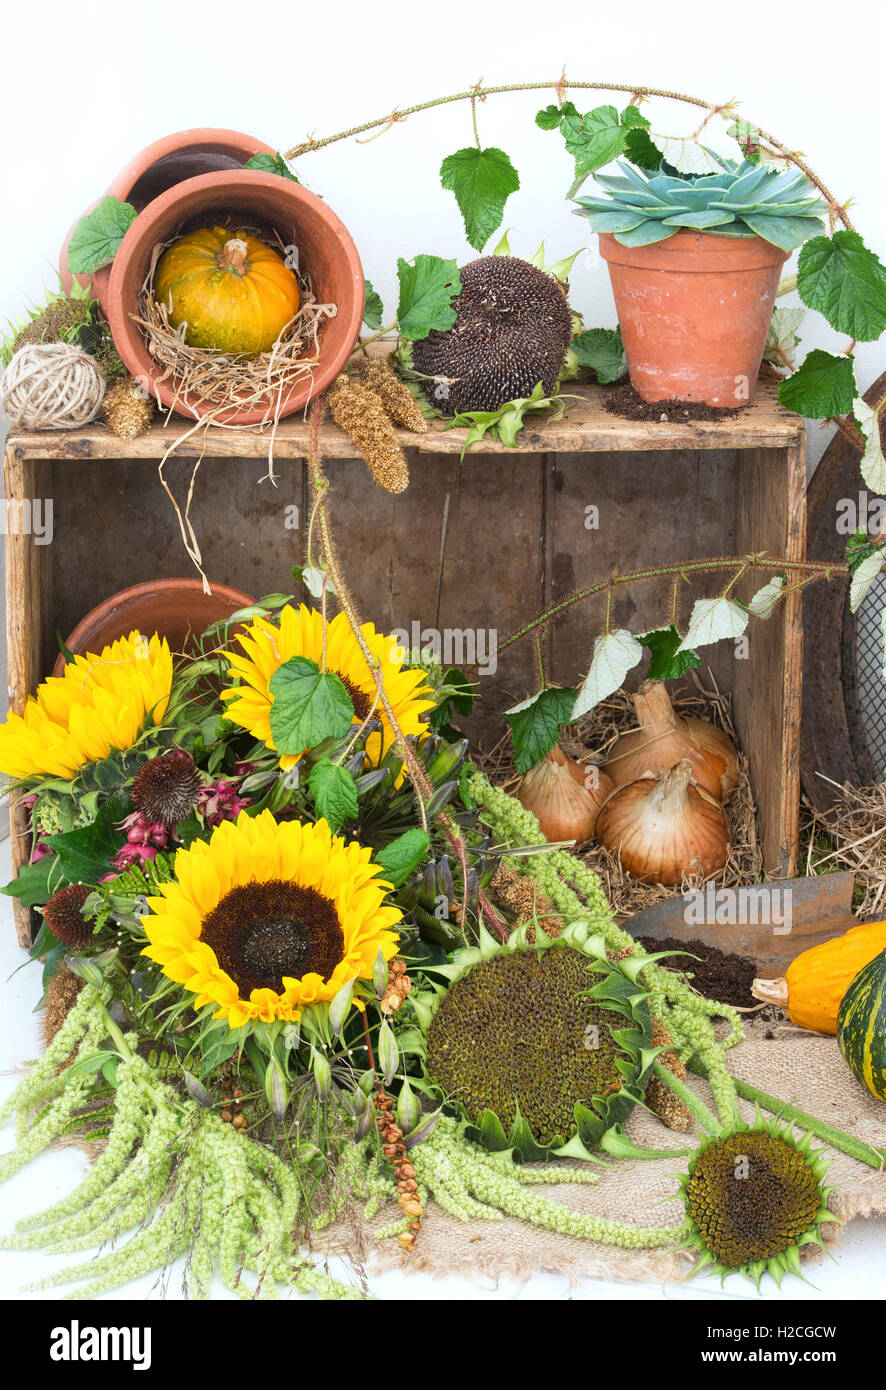 Holzkiste mit geernteten Gemüse und Sonnenblumen. Harrogate herbstliche Blumenschau. Harrogate, North Yorkshire, England Stockfoto